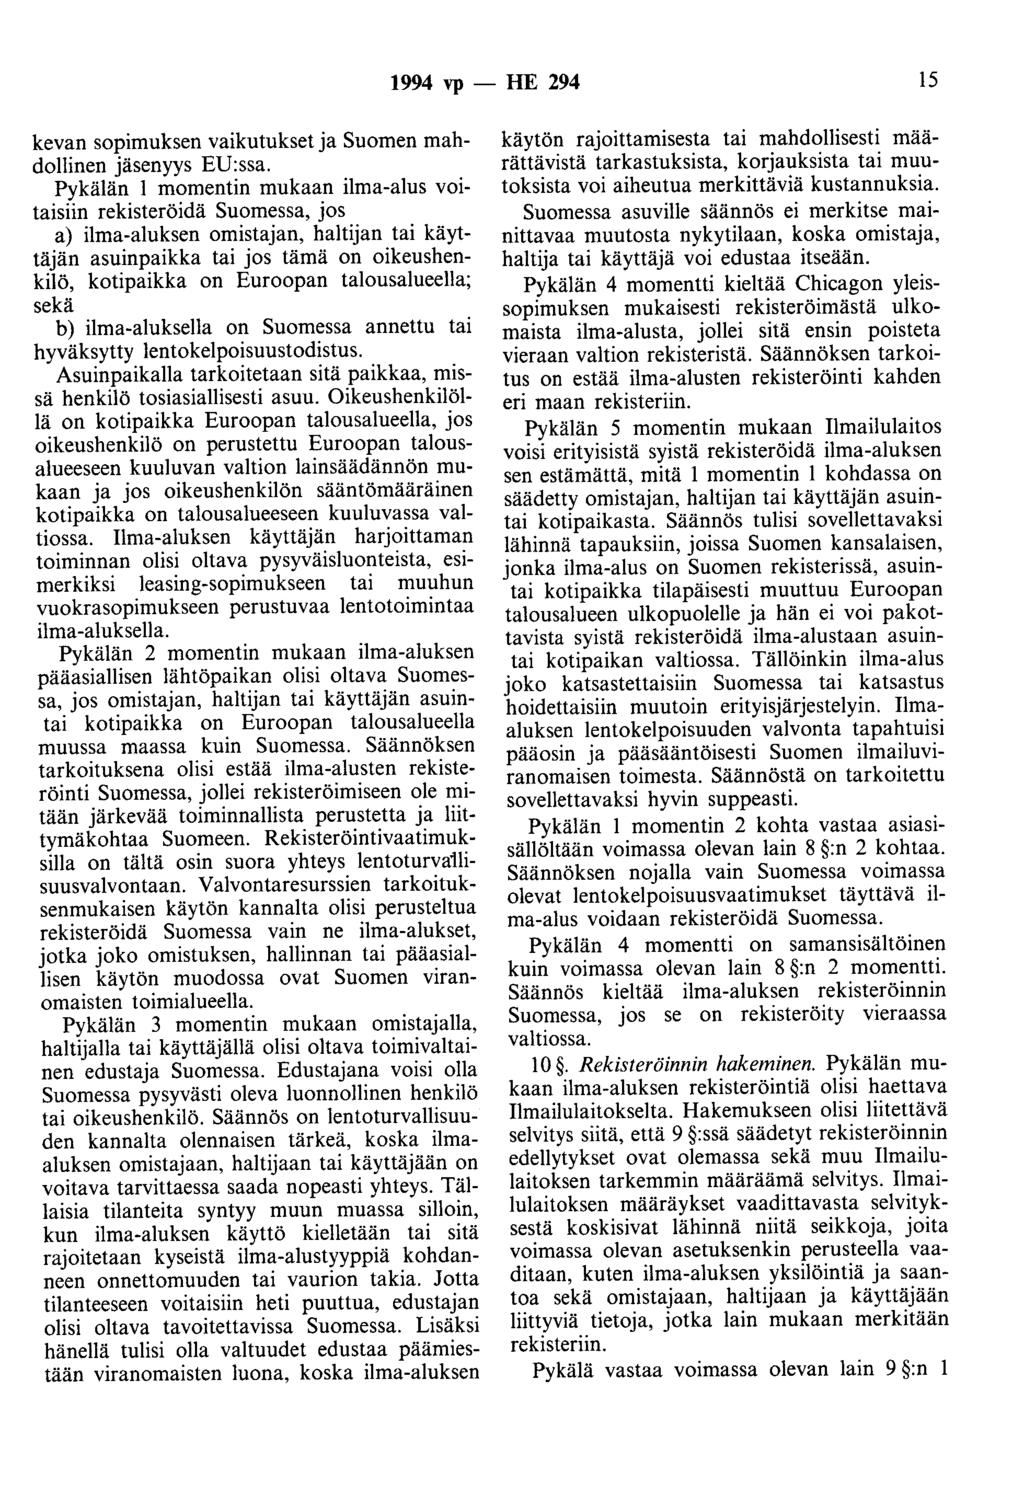 1994 vp -- FrE 294 15 kevan sopimuksen vaikutukset ja Suomen mahdollinen jäsenyys EU:ssa.